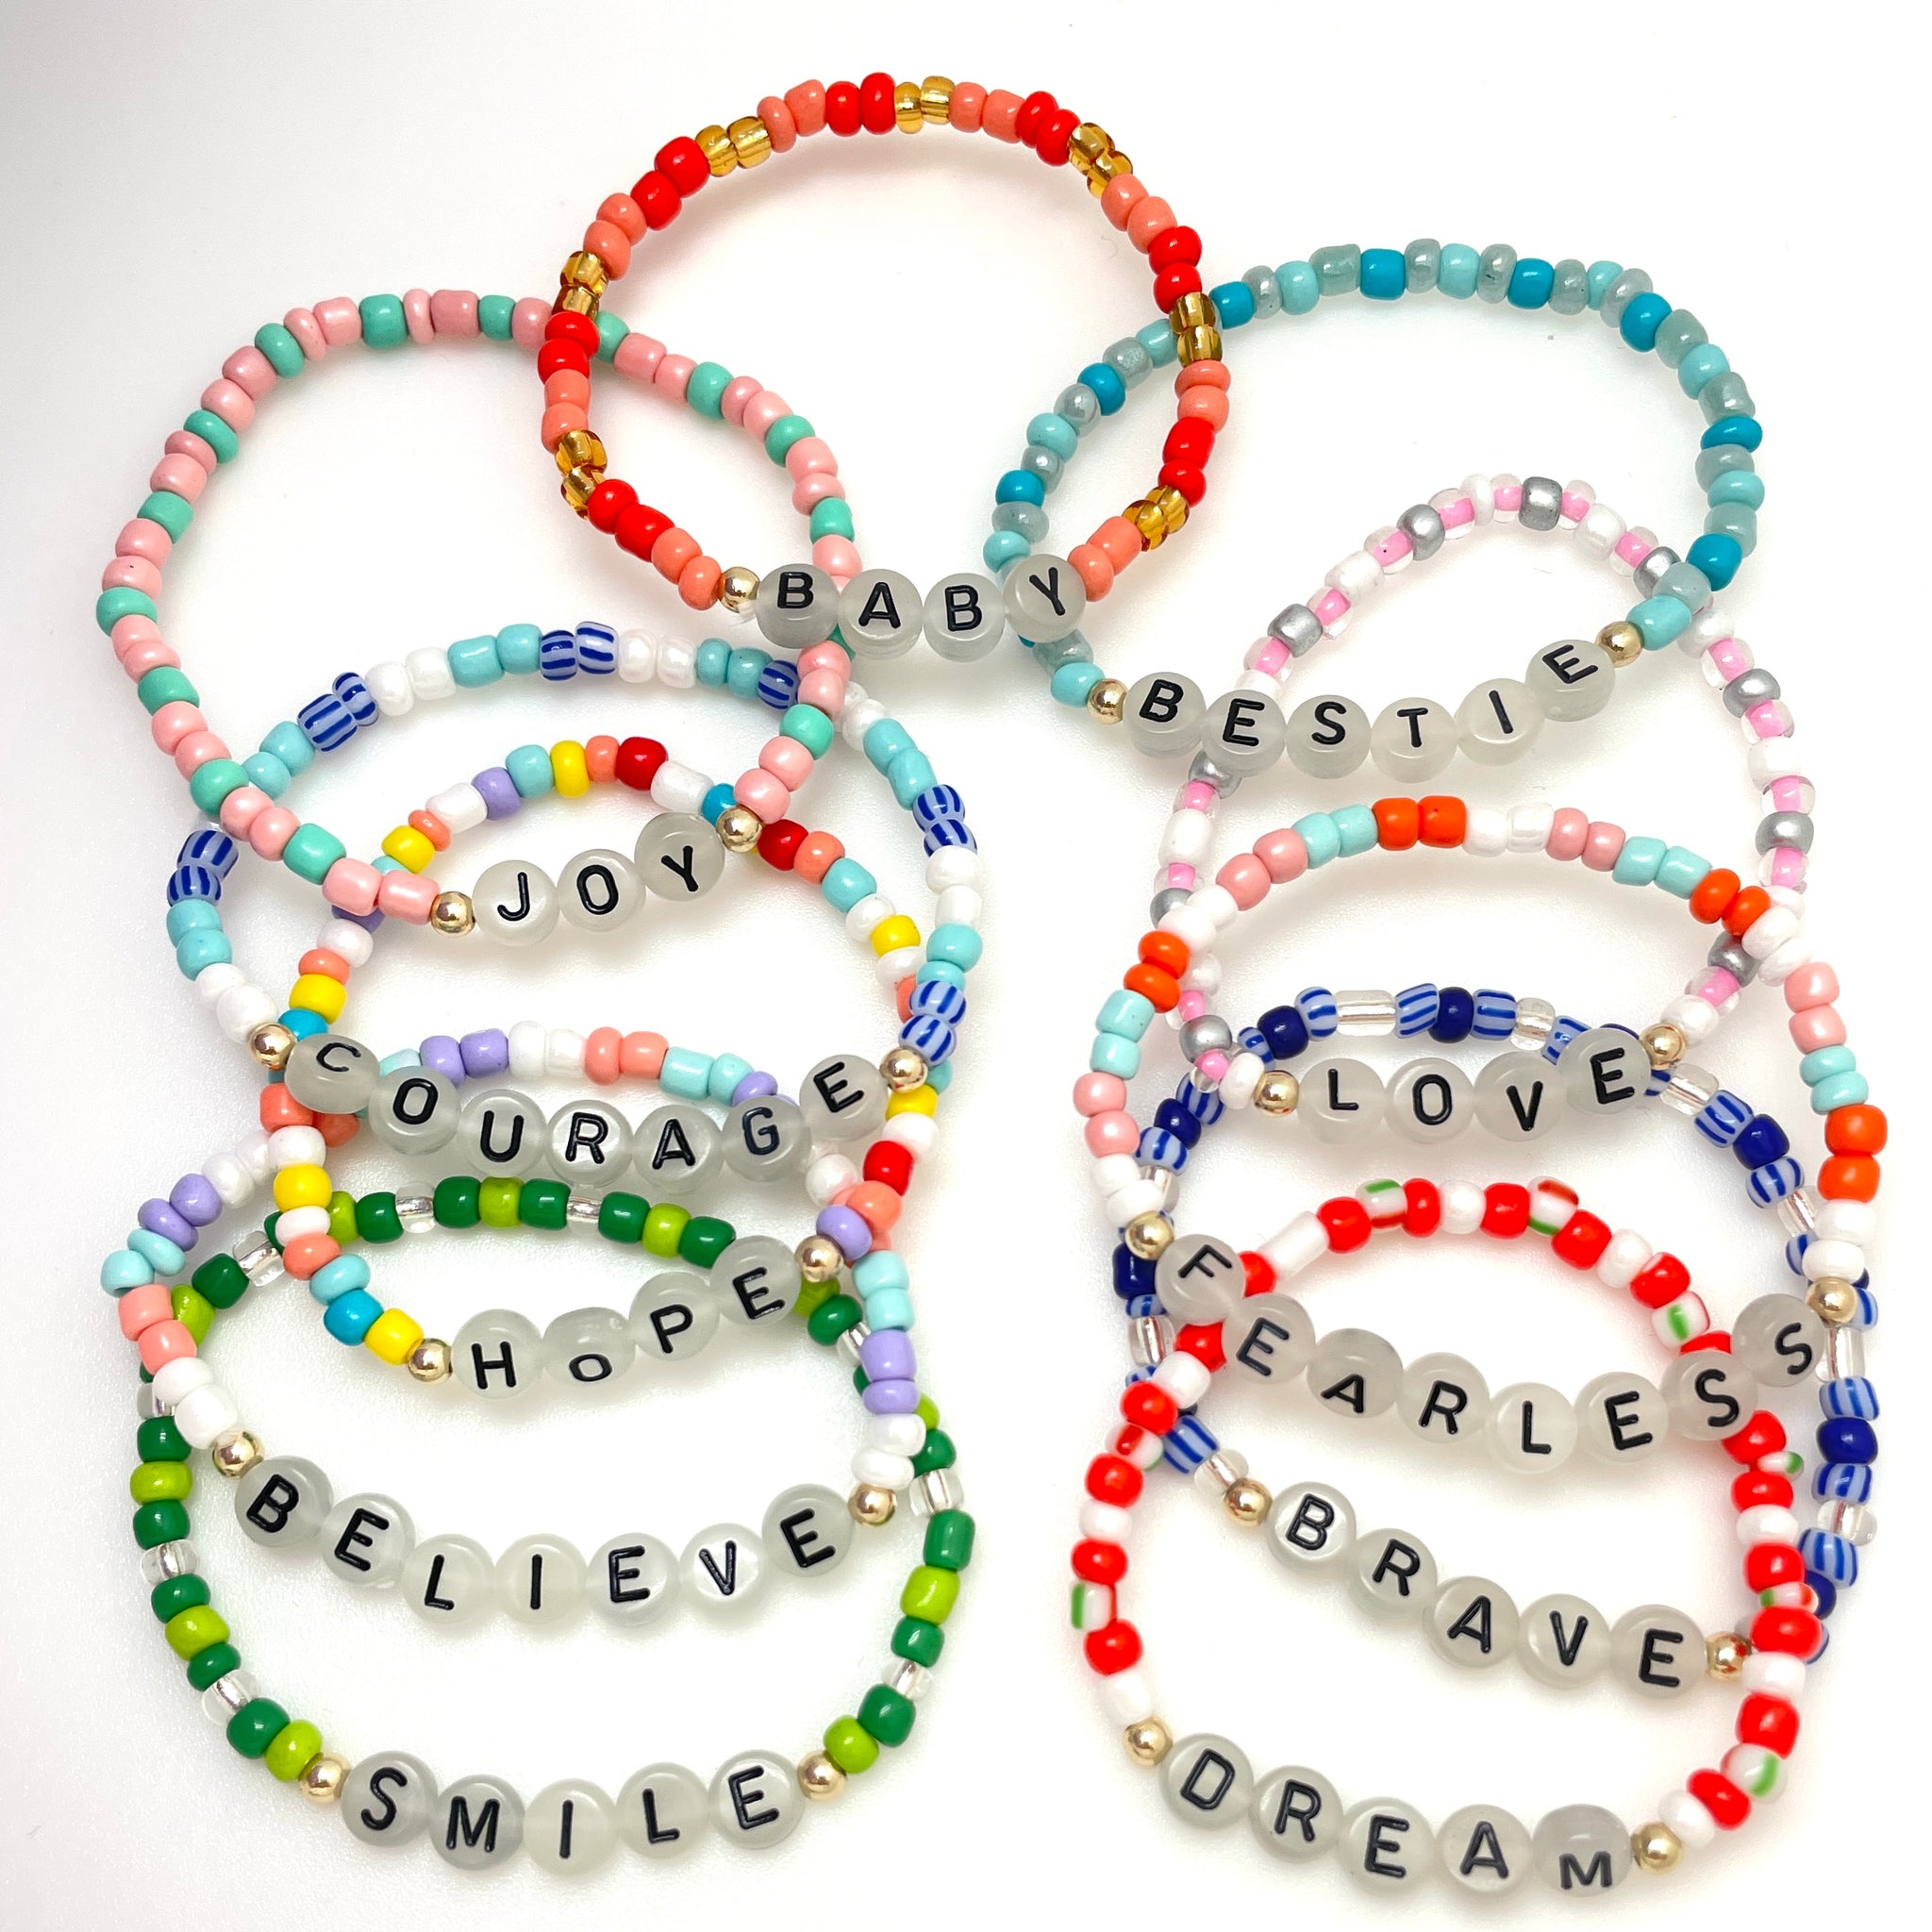 DIY Friendship Bracelets Supplies for the Taylor Swift Eras Tour Project